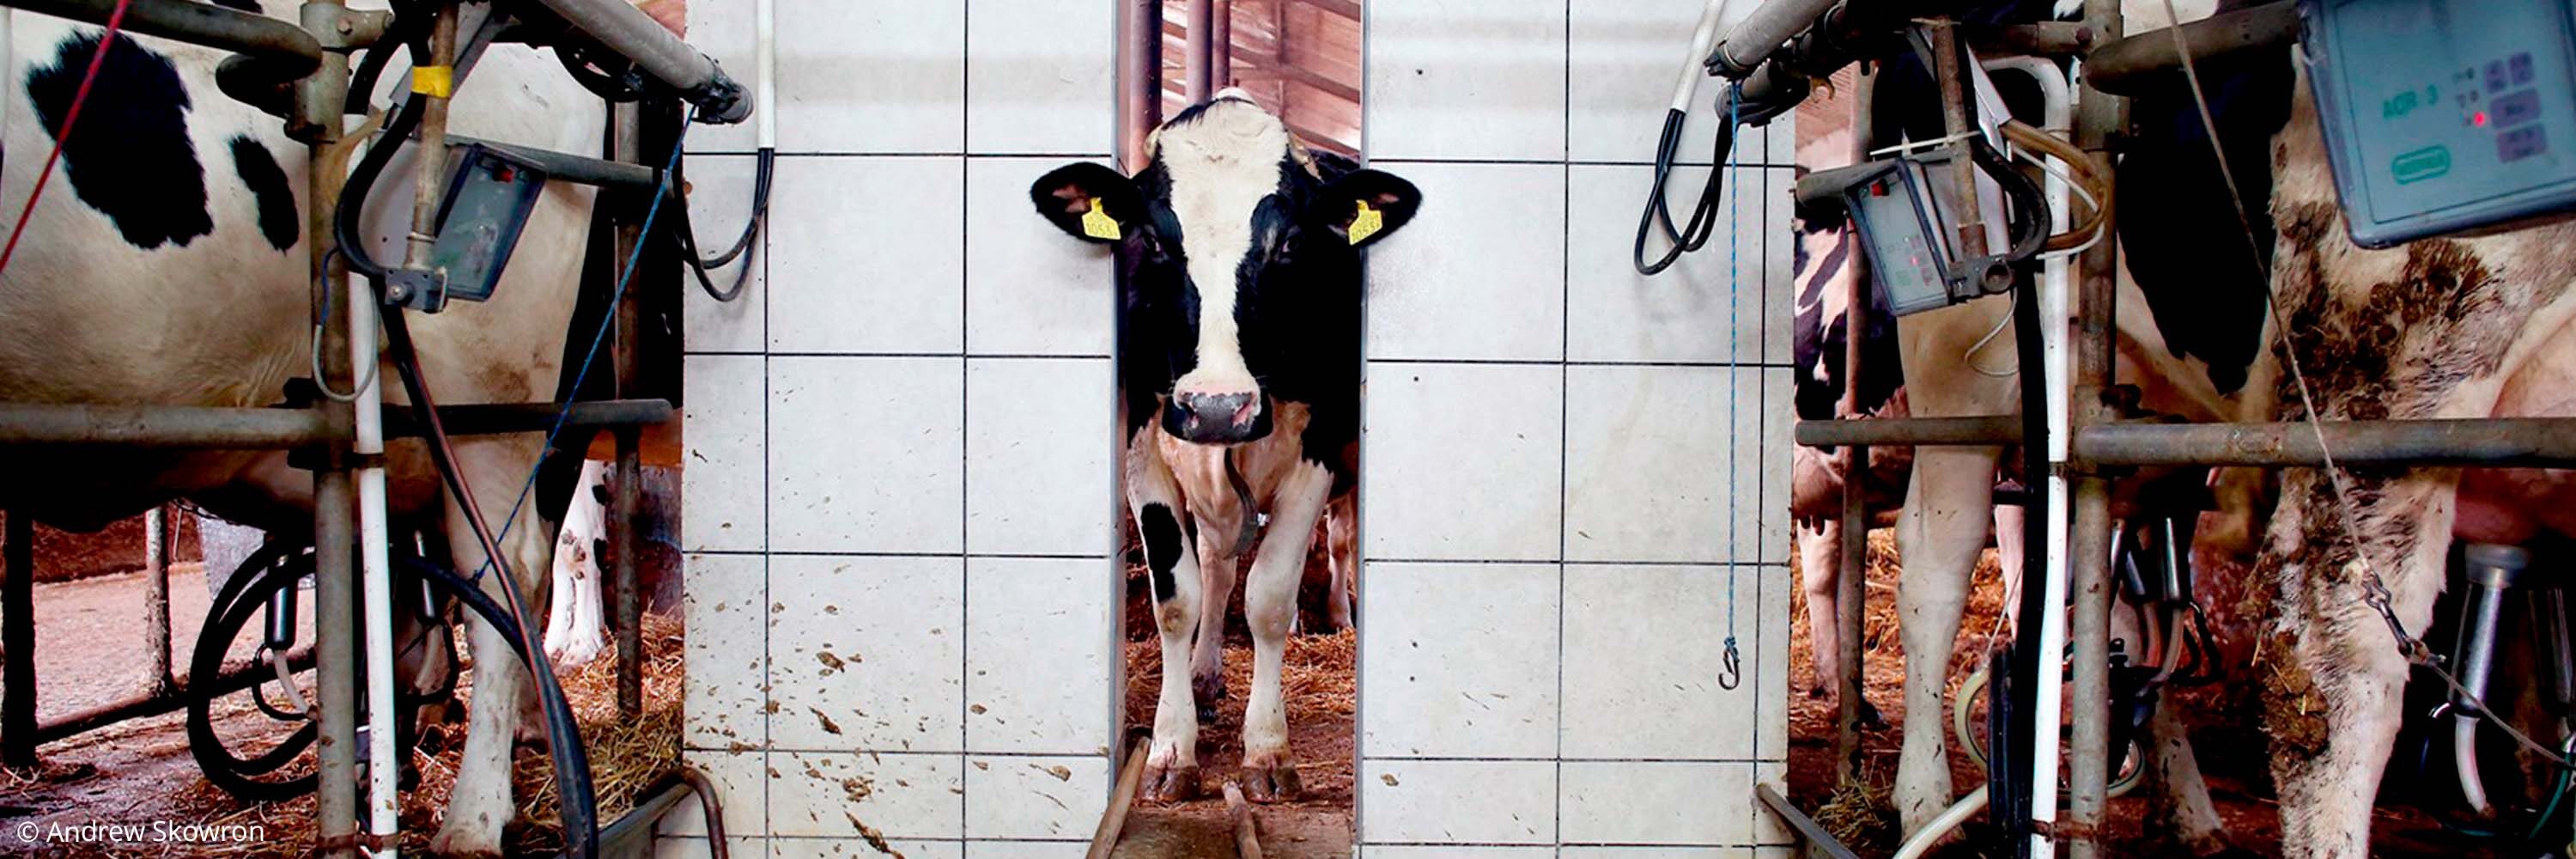 vaca en una granja industrial en la sala de ordeño